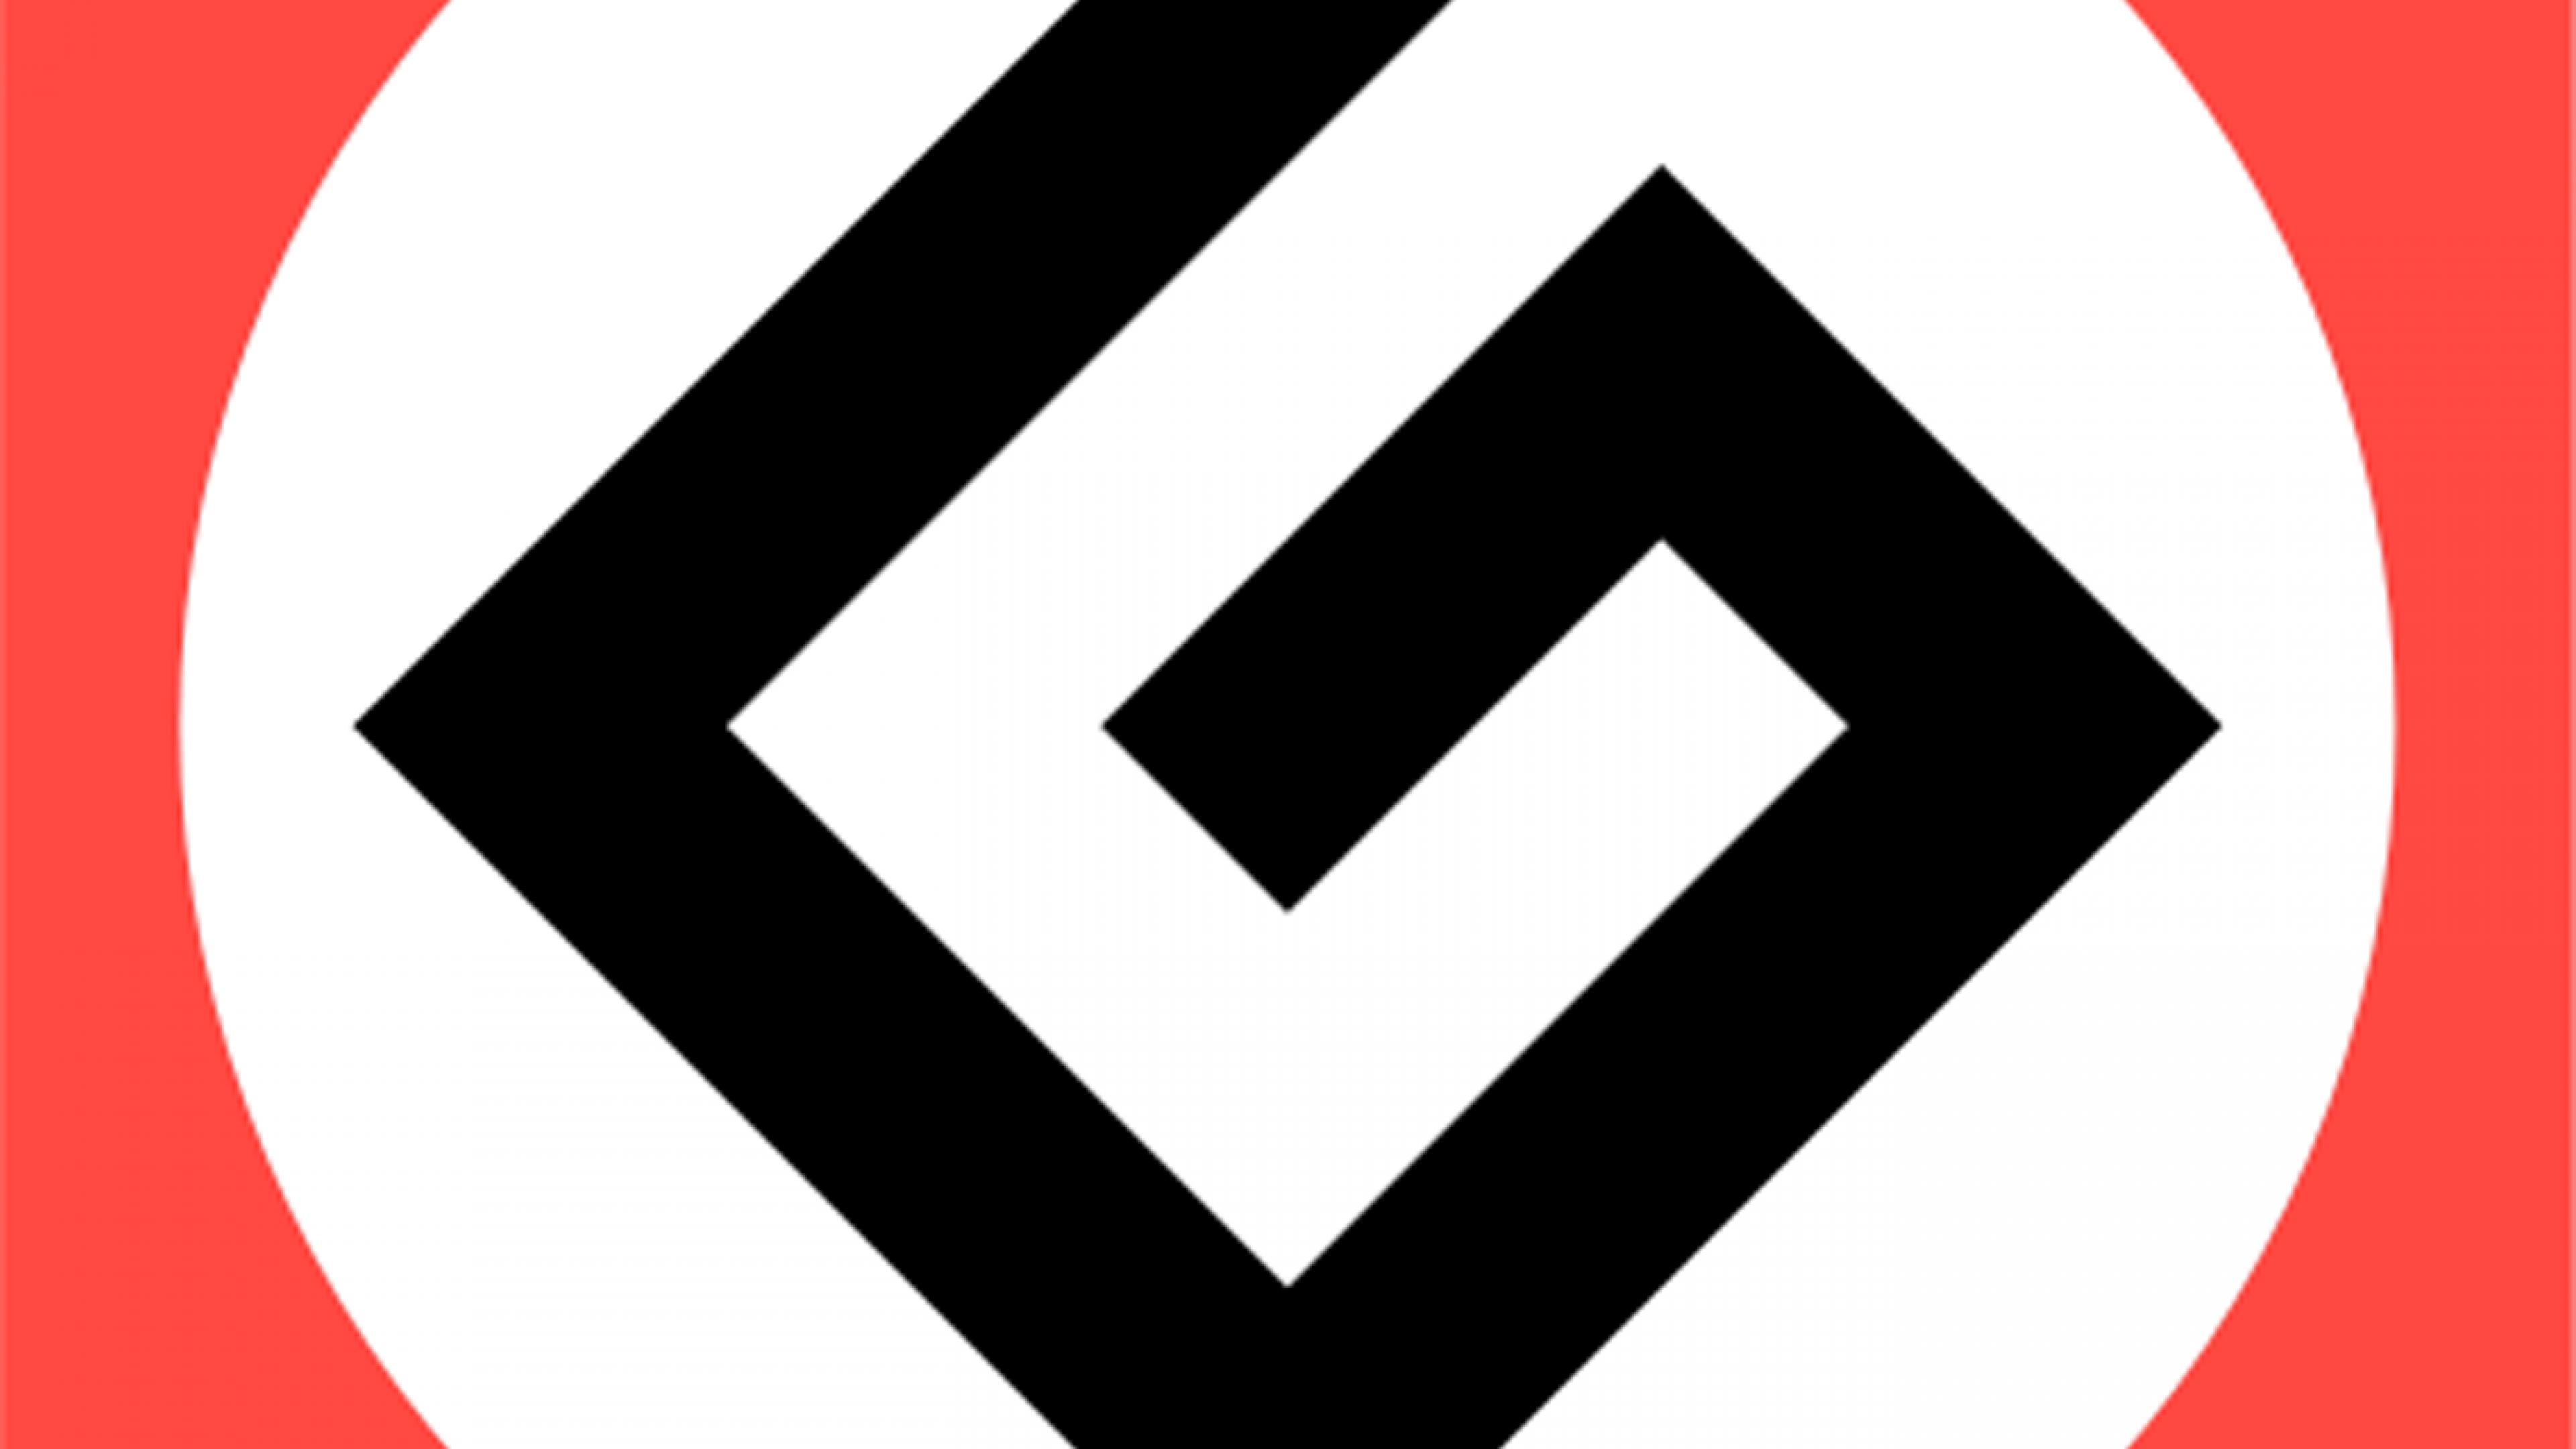 grammar nazi logos HD Wallpaper of Companies Brands